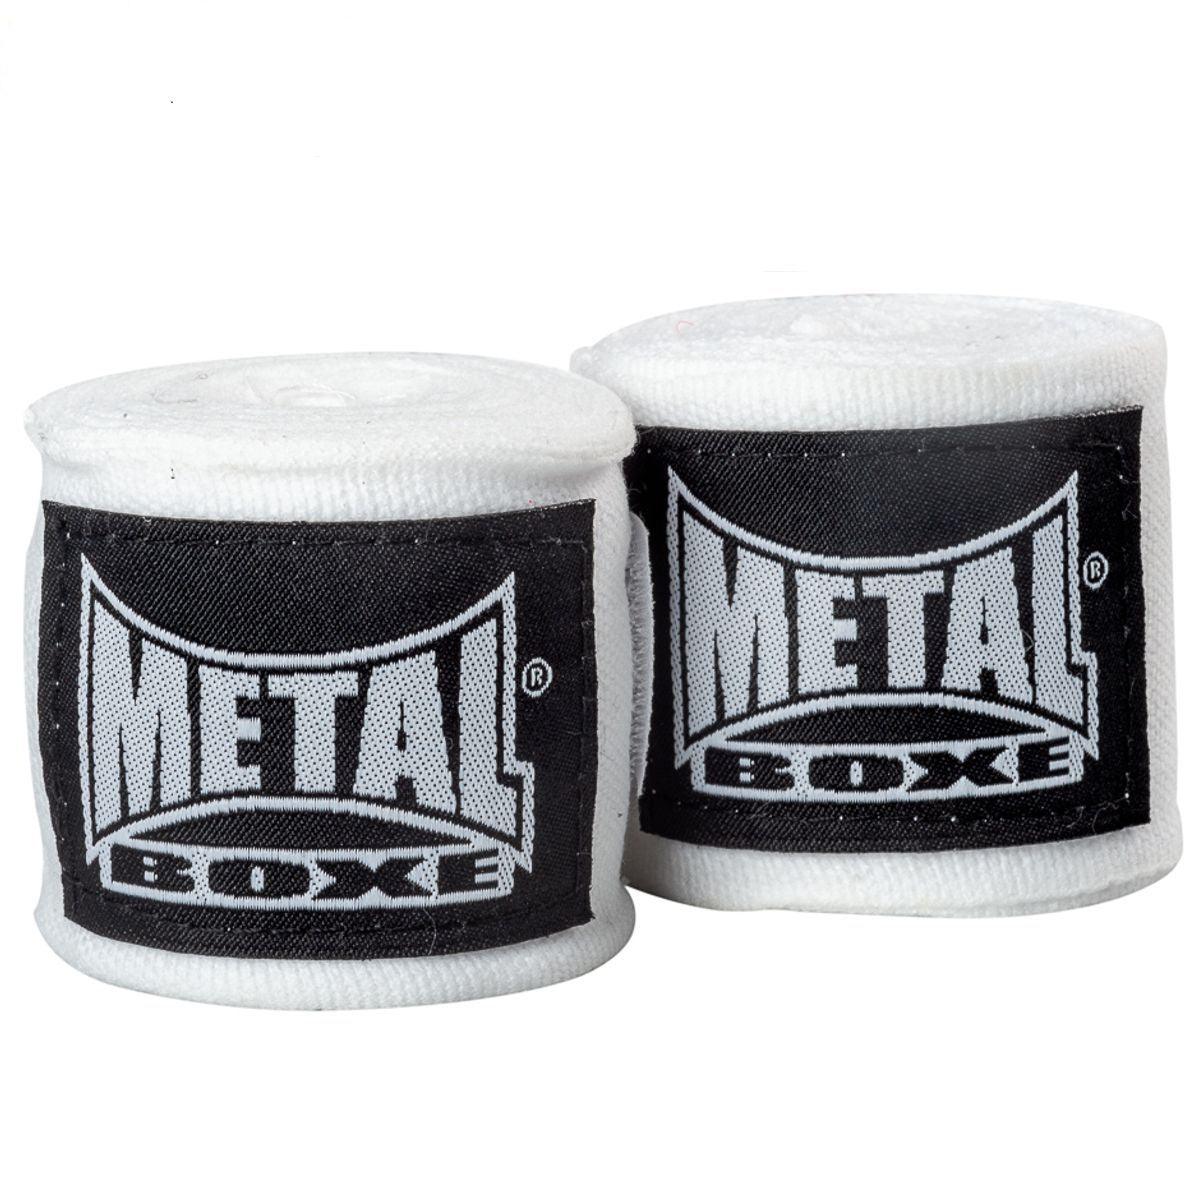 Bande Metal Boxe Bande de boxe Métal boxe-250 cm-Bande Blanche  (MB120-W)---250 cm-Bande Metal Boxe Blanche (MB120-W)-------------Bande  Metal Boxe Blanche